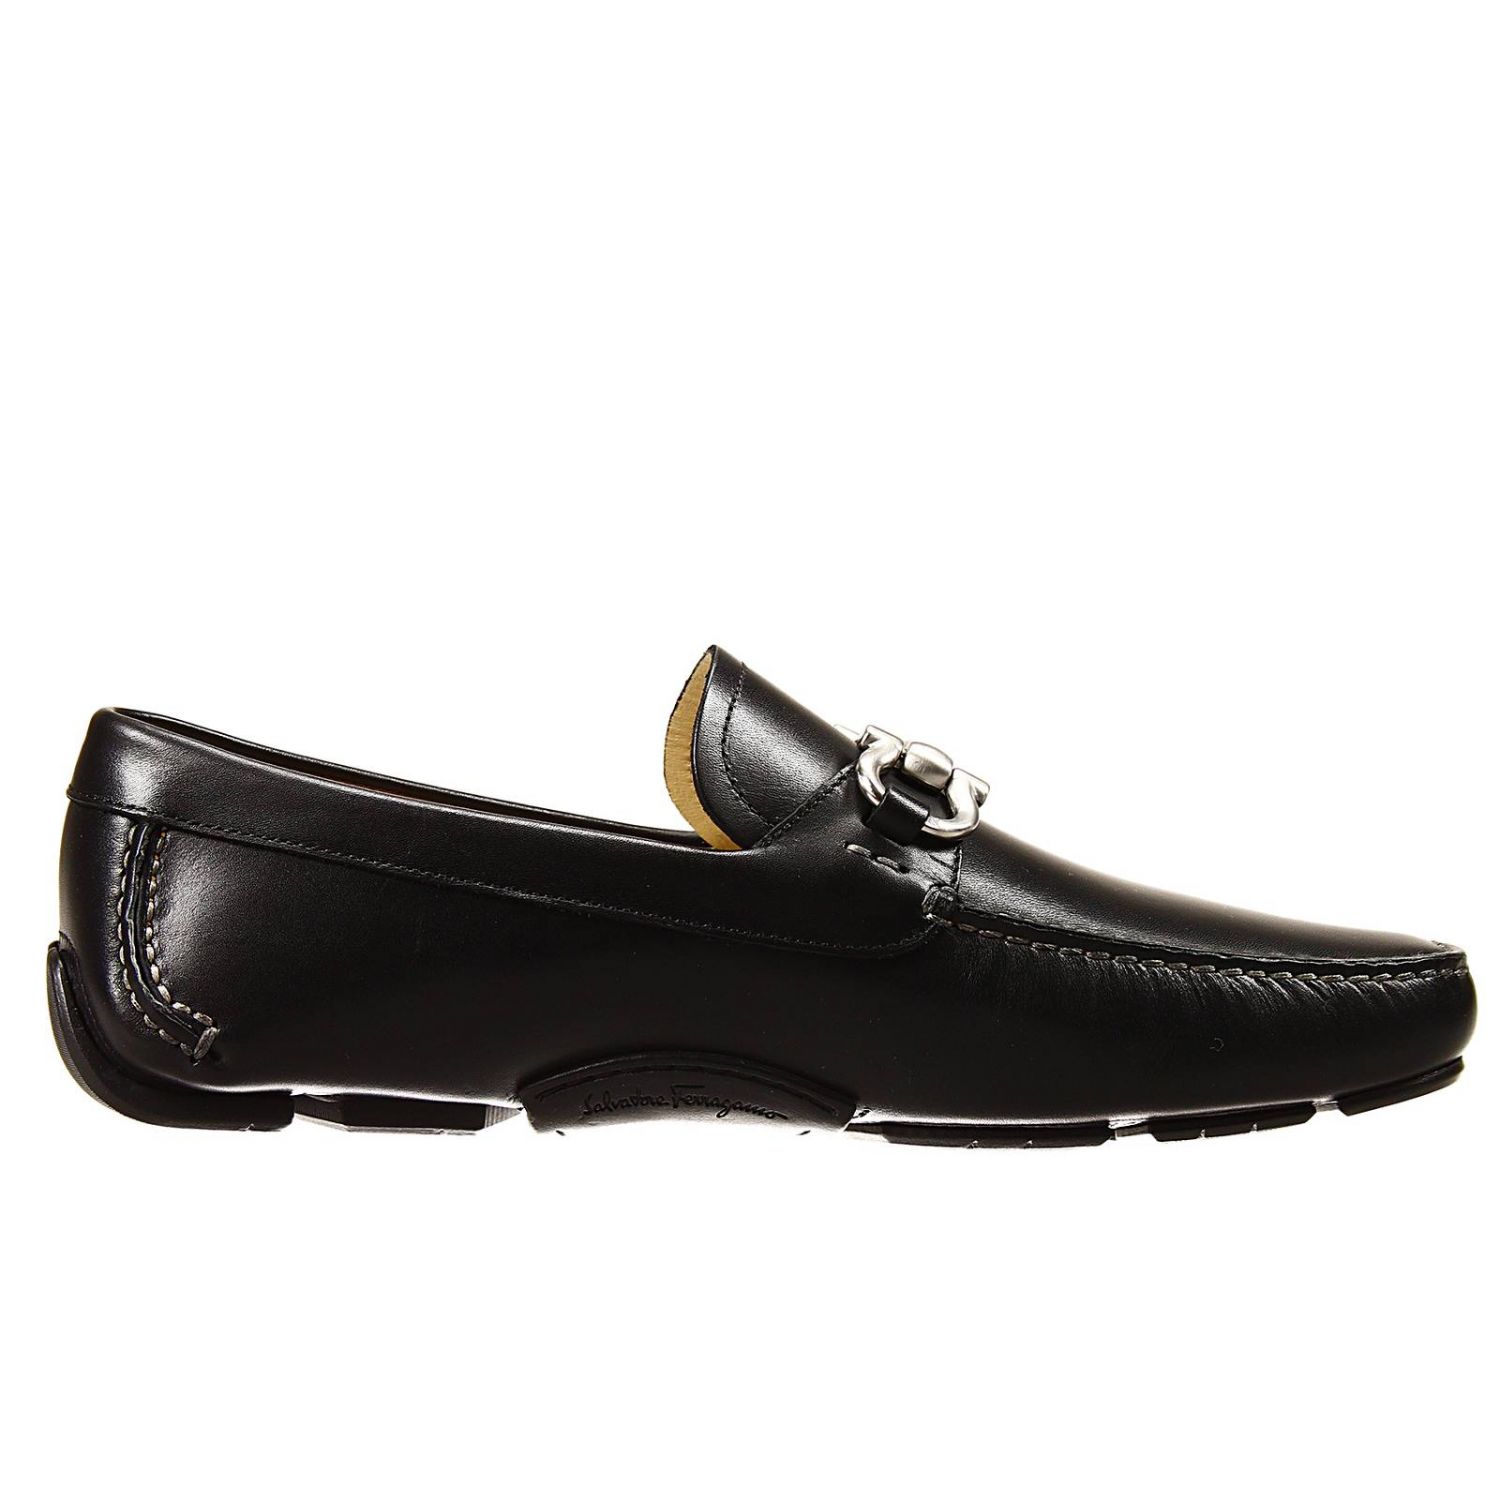 Salvatore Ferragamo Outlet: shoes parigi loafer or penny loafer driver ...